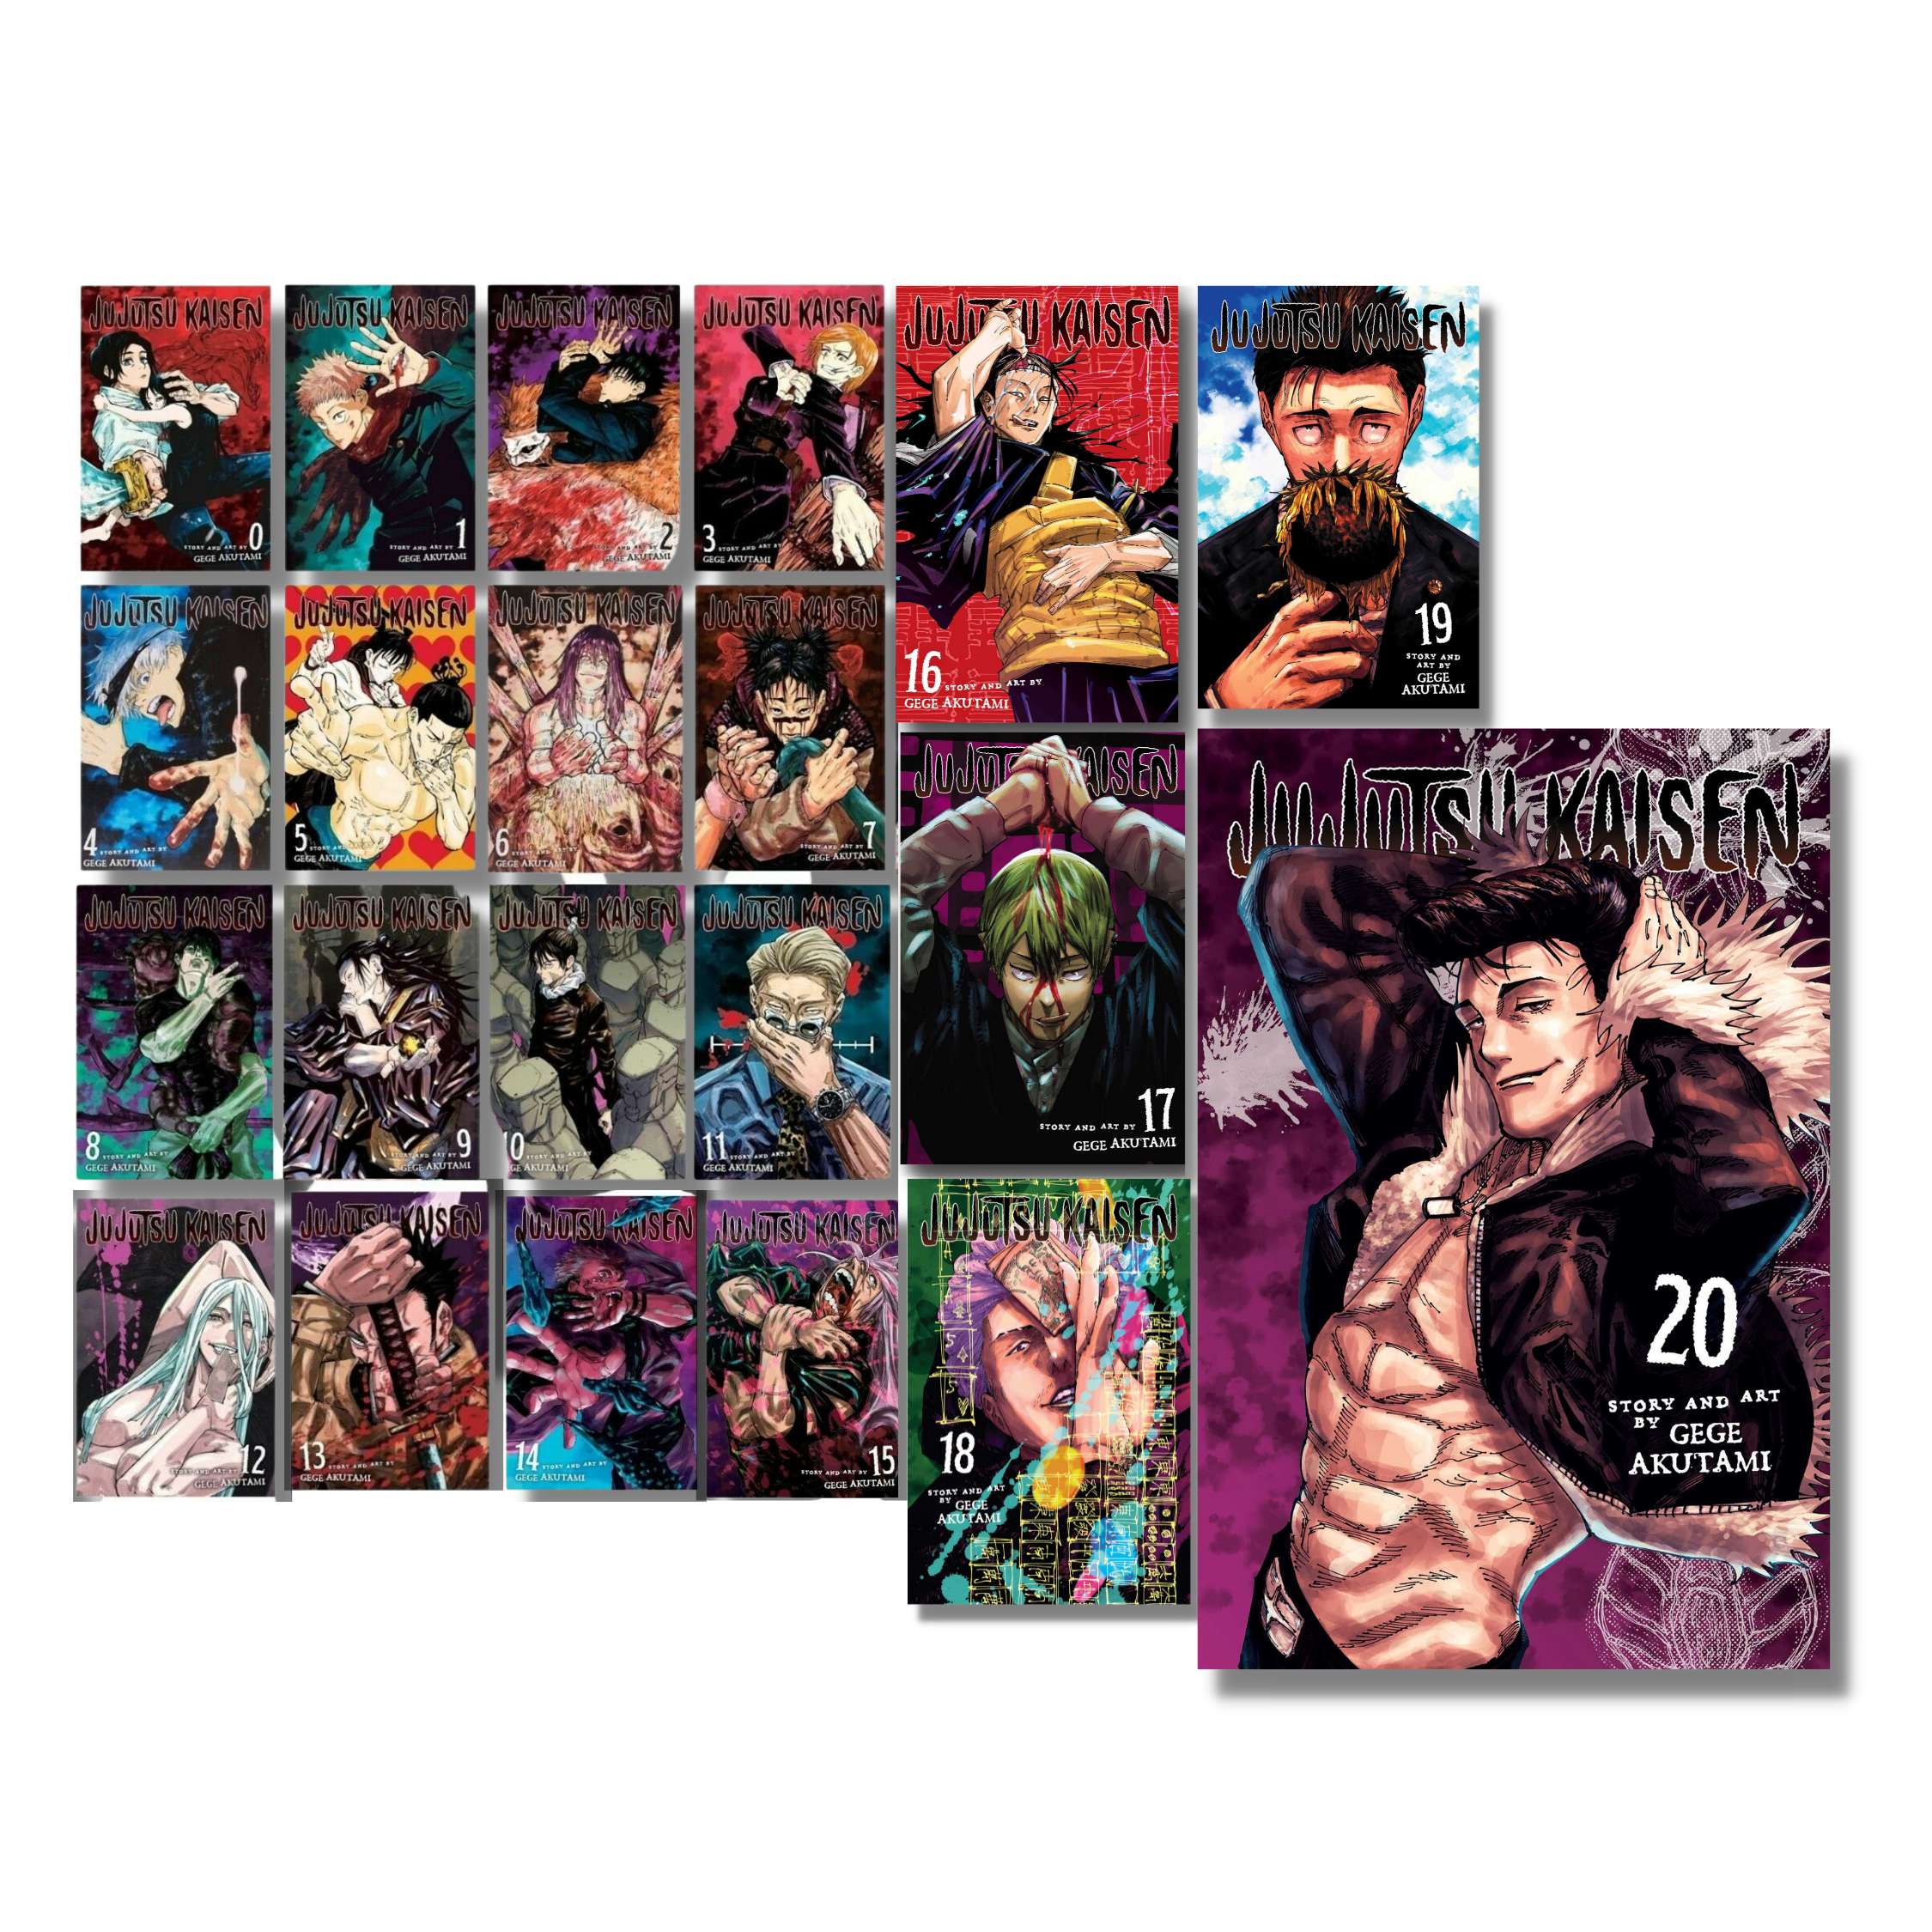 Jujutsu Kaisen Manga Series (Volume 0-18) 19 Books Collection Set by Gege  Akutami & Juliet Music Magnetic Bookmarks